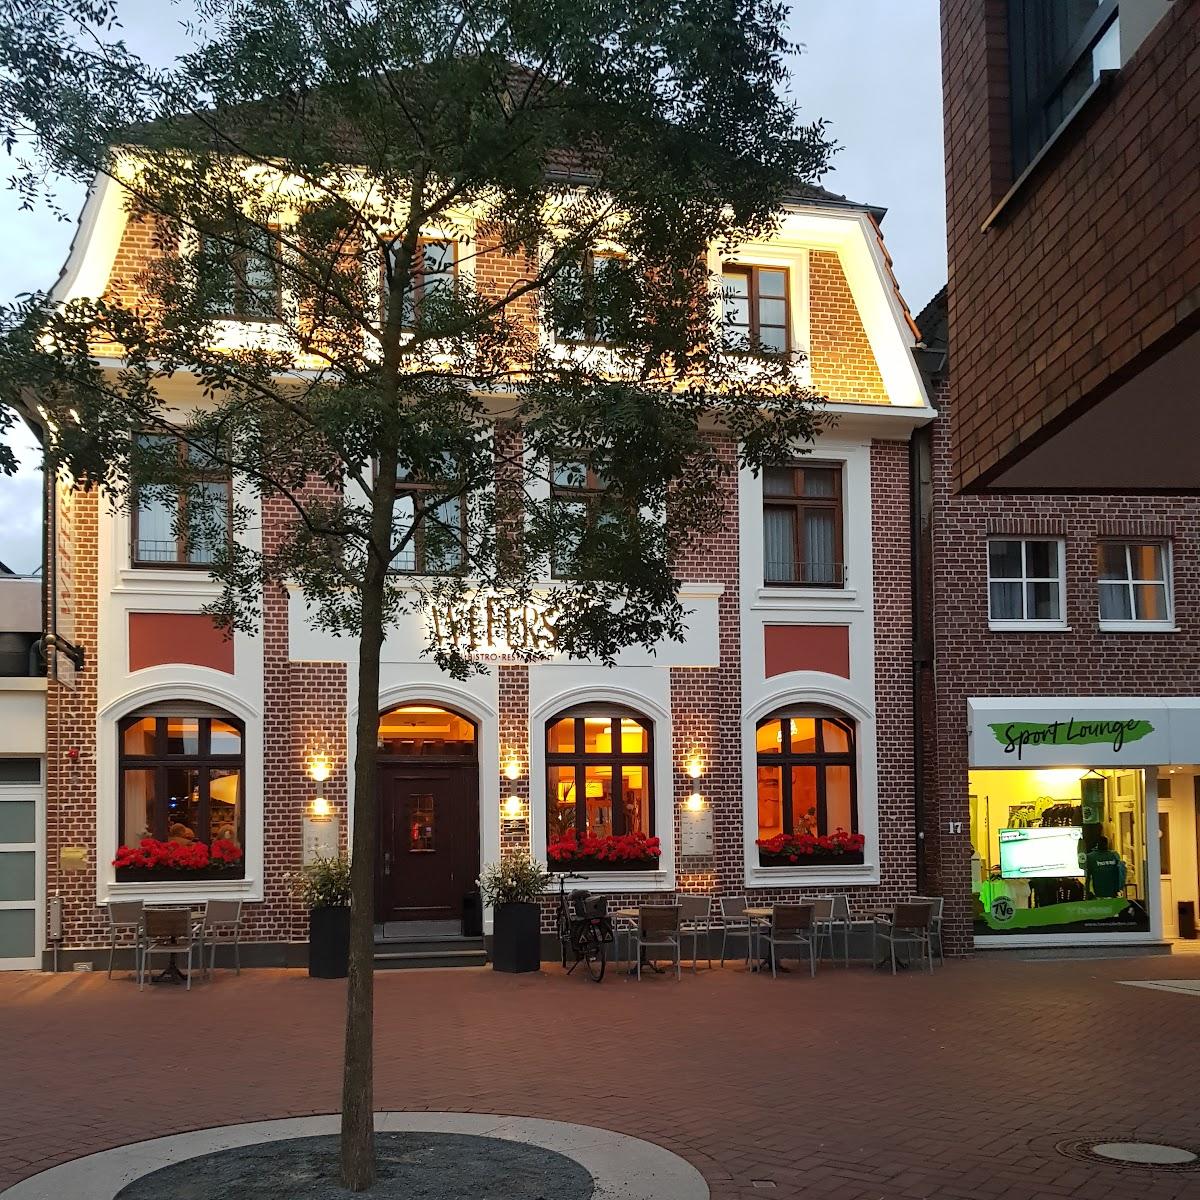 Restaurant "Wefers Bistro & Hotel" in Emsdetten